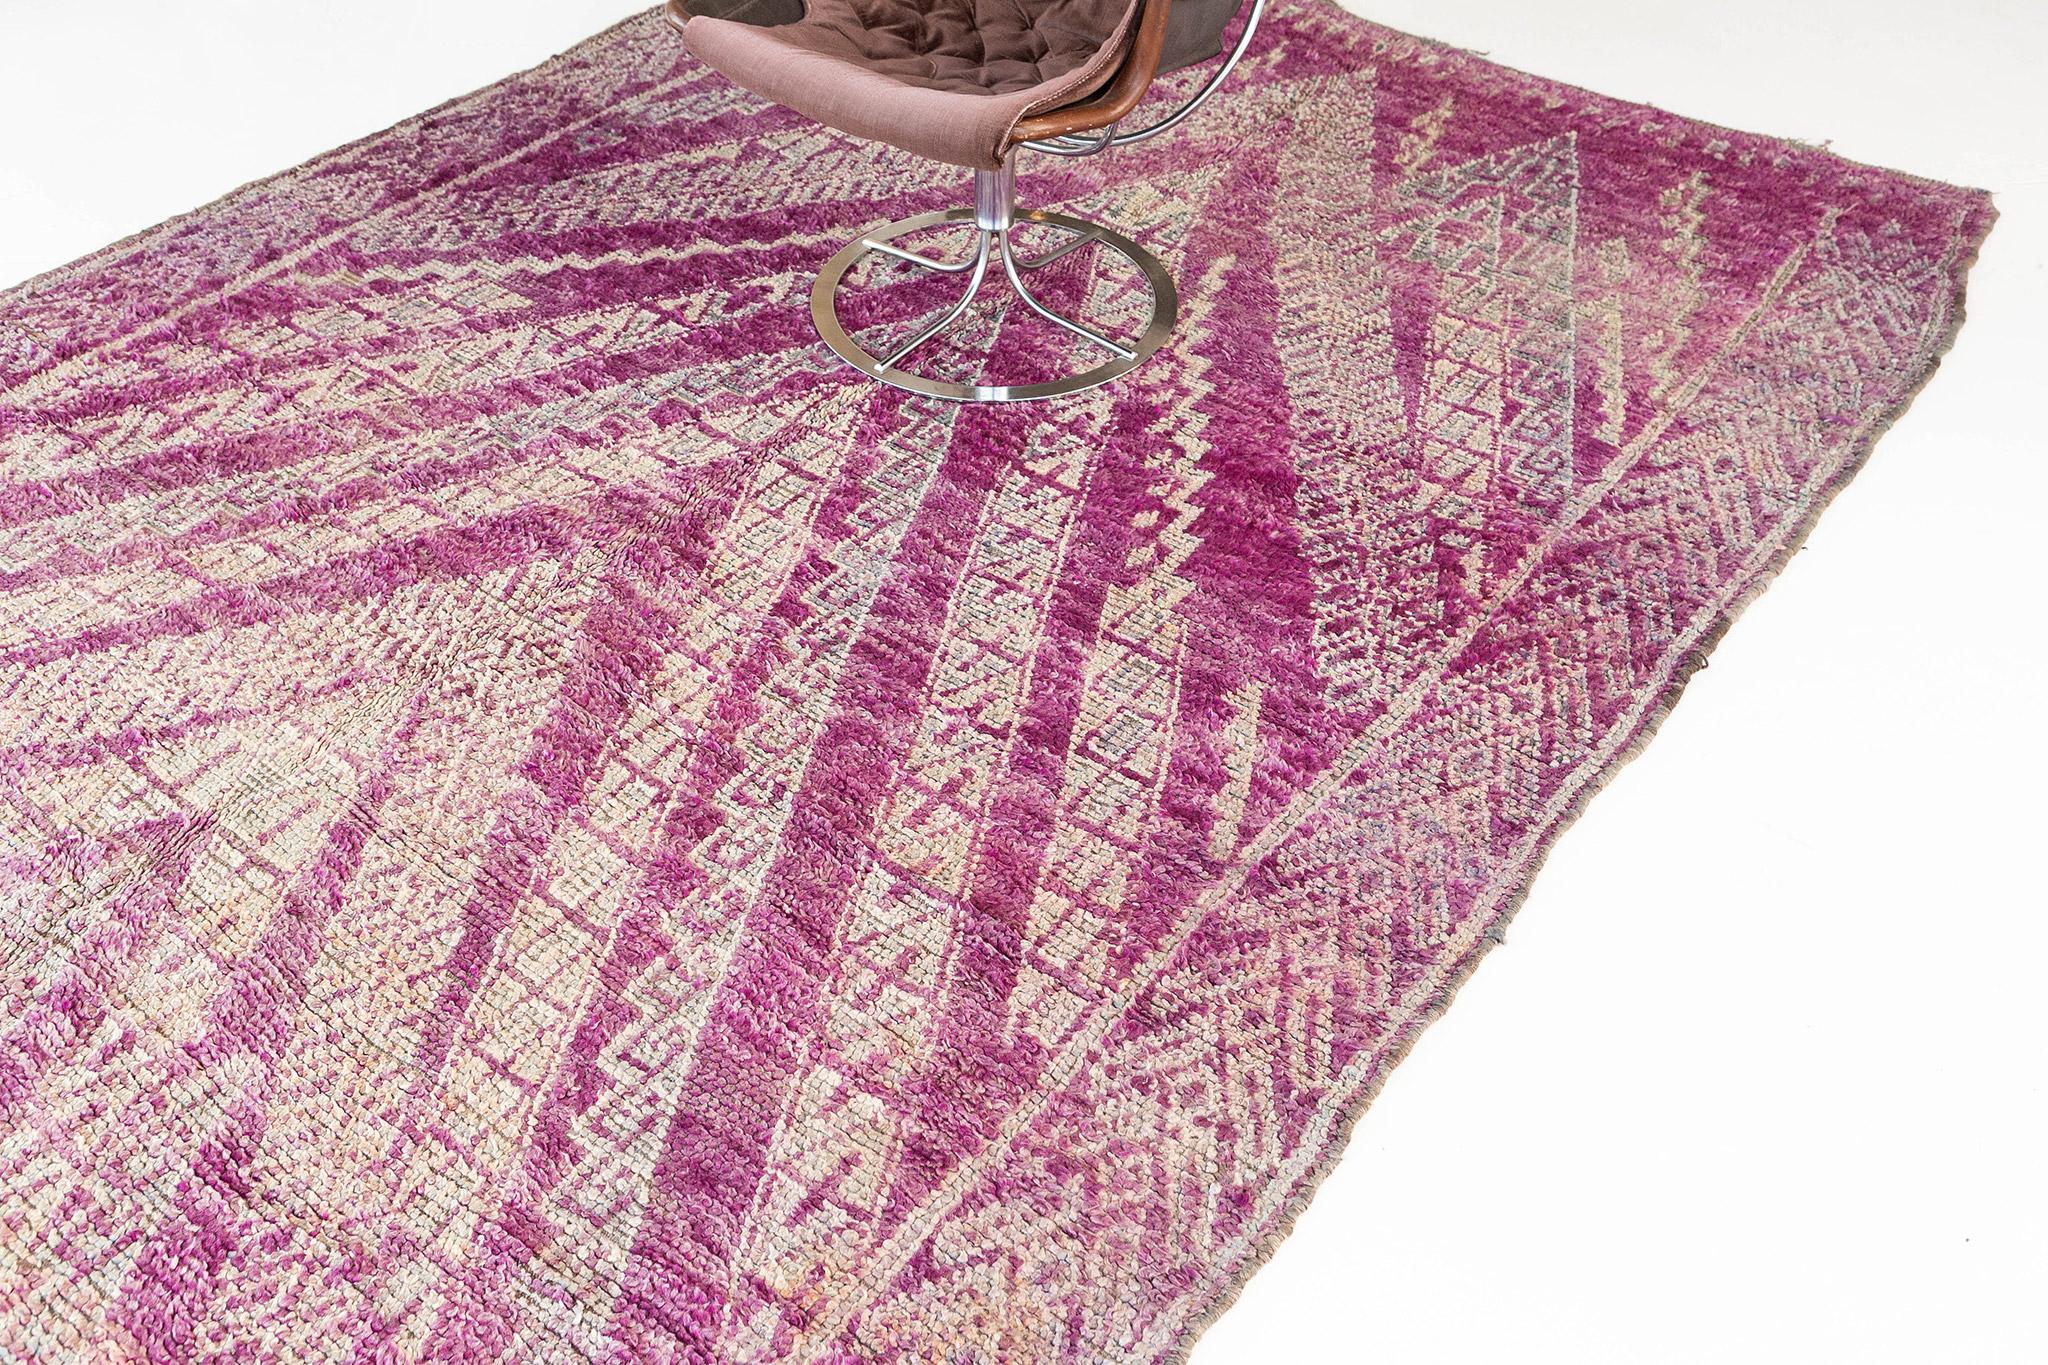 Dieser Teppich ist charakteristisch für die Beni M'Guild und zeigt ein leuchtendes magentafarbenes Feld mit traditionellen Chevron-Formen in Anthrazit und Taupe, die in Elfenbein umrandet sind. Die Seitenränder wiederholen die V-Form in einem